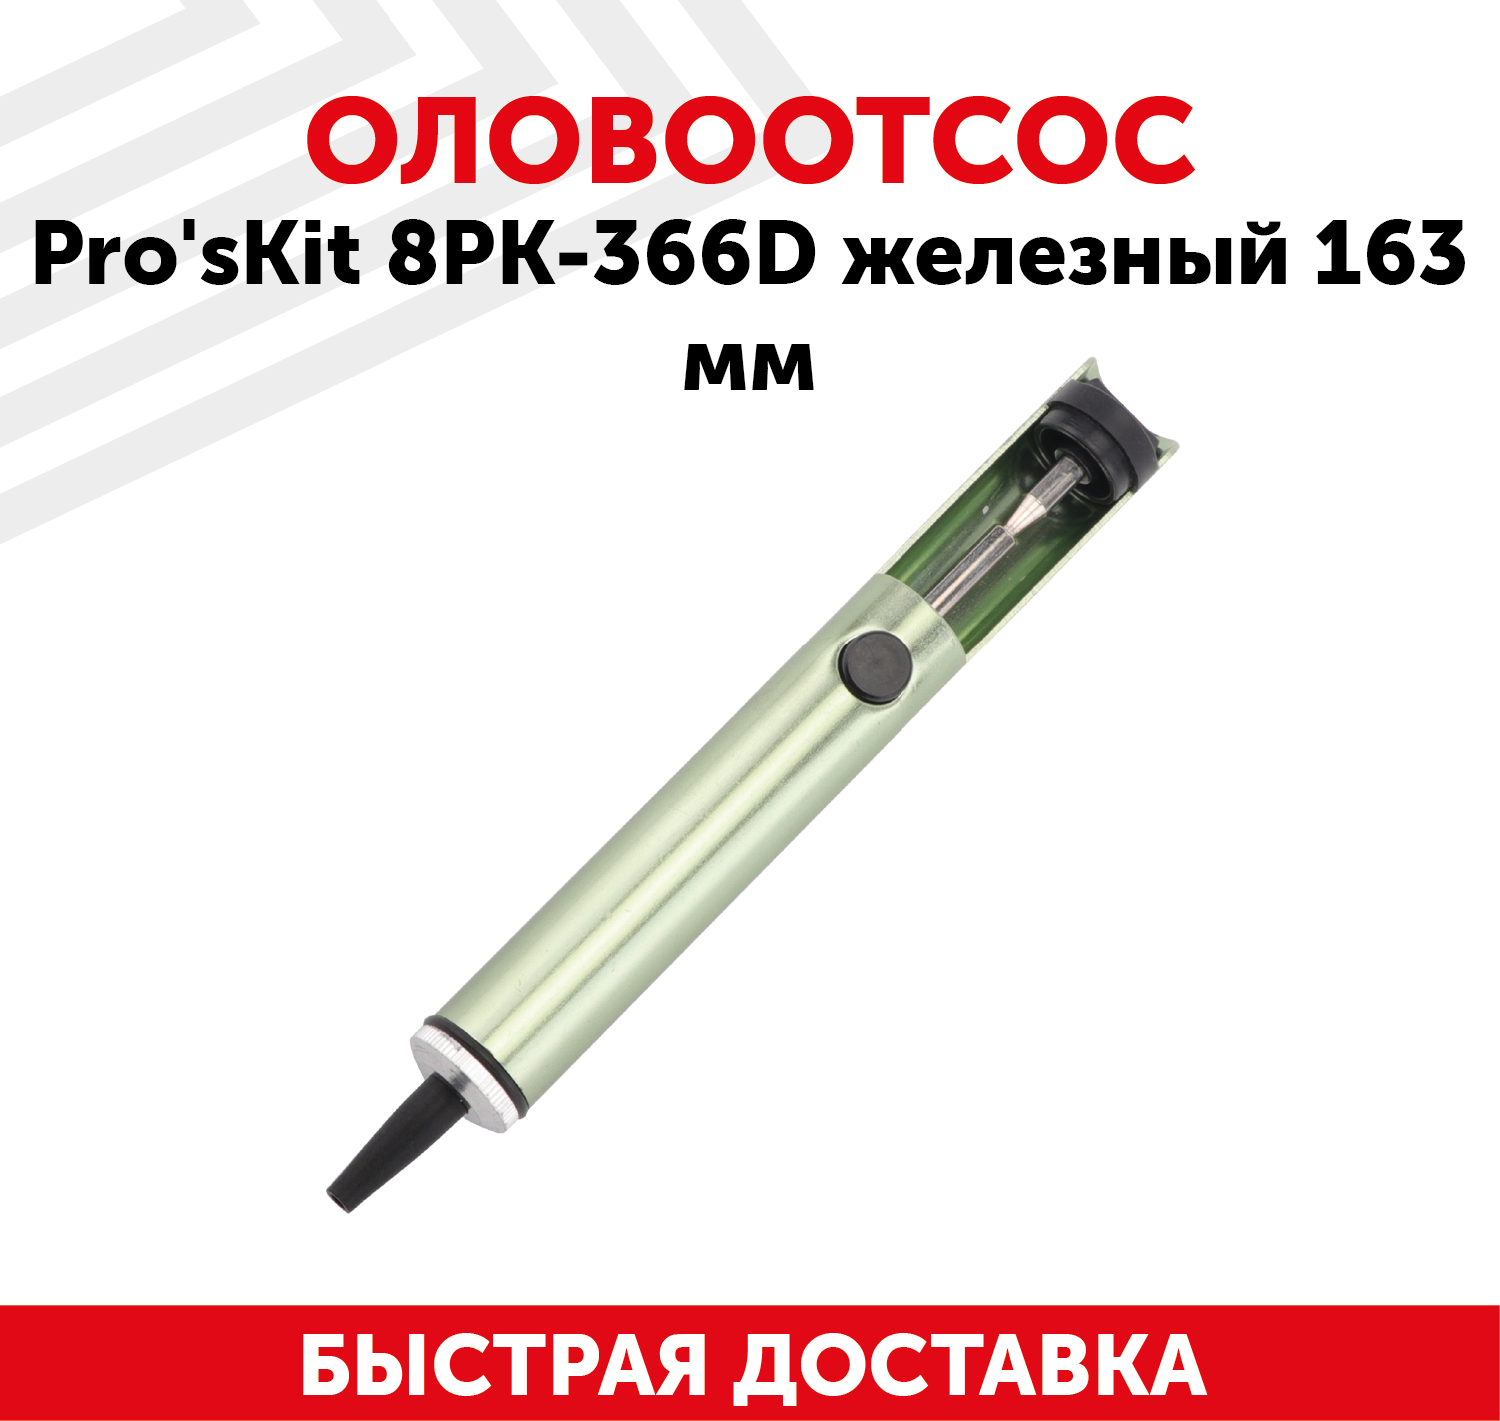 Оловоотсос ProsKit 8PK-366D антистатический